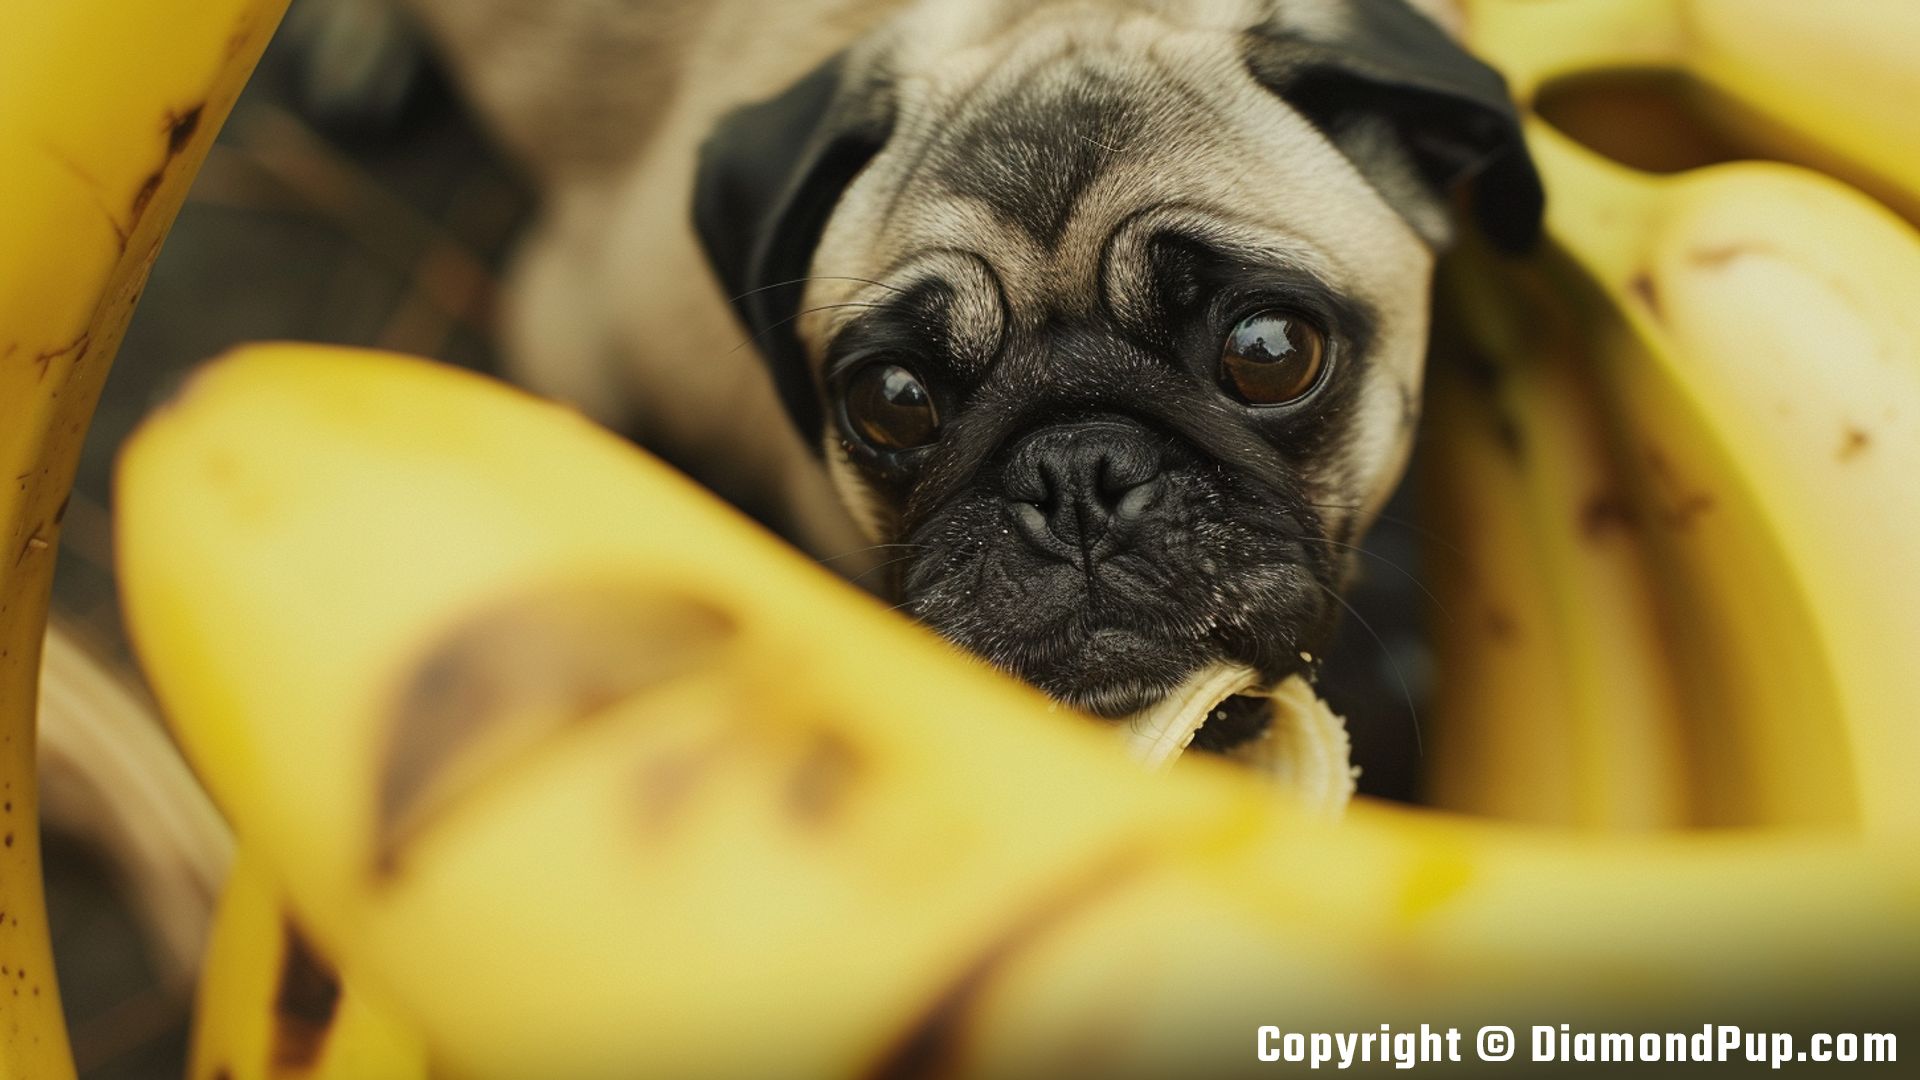 Photograph of an Adorable Pug Eating Banana